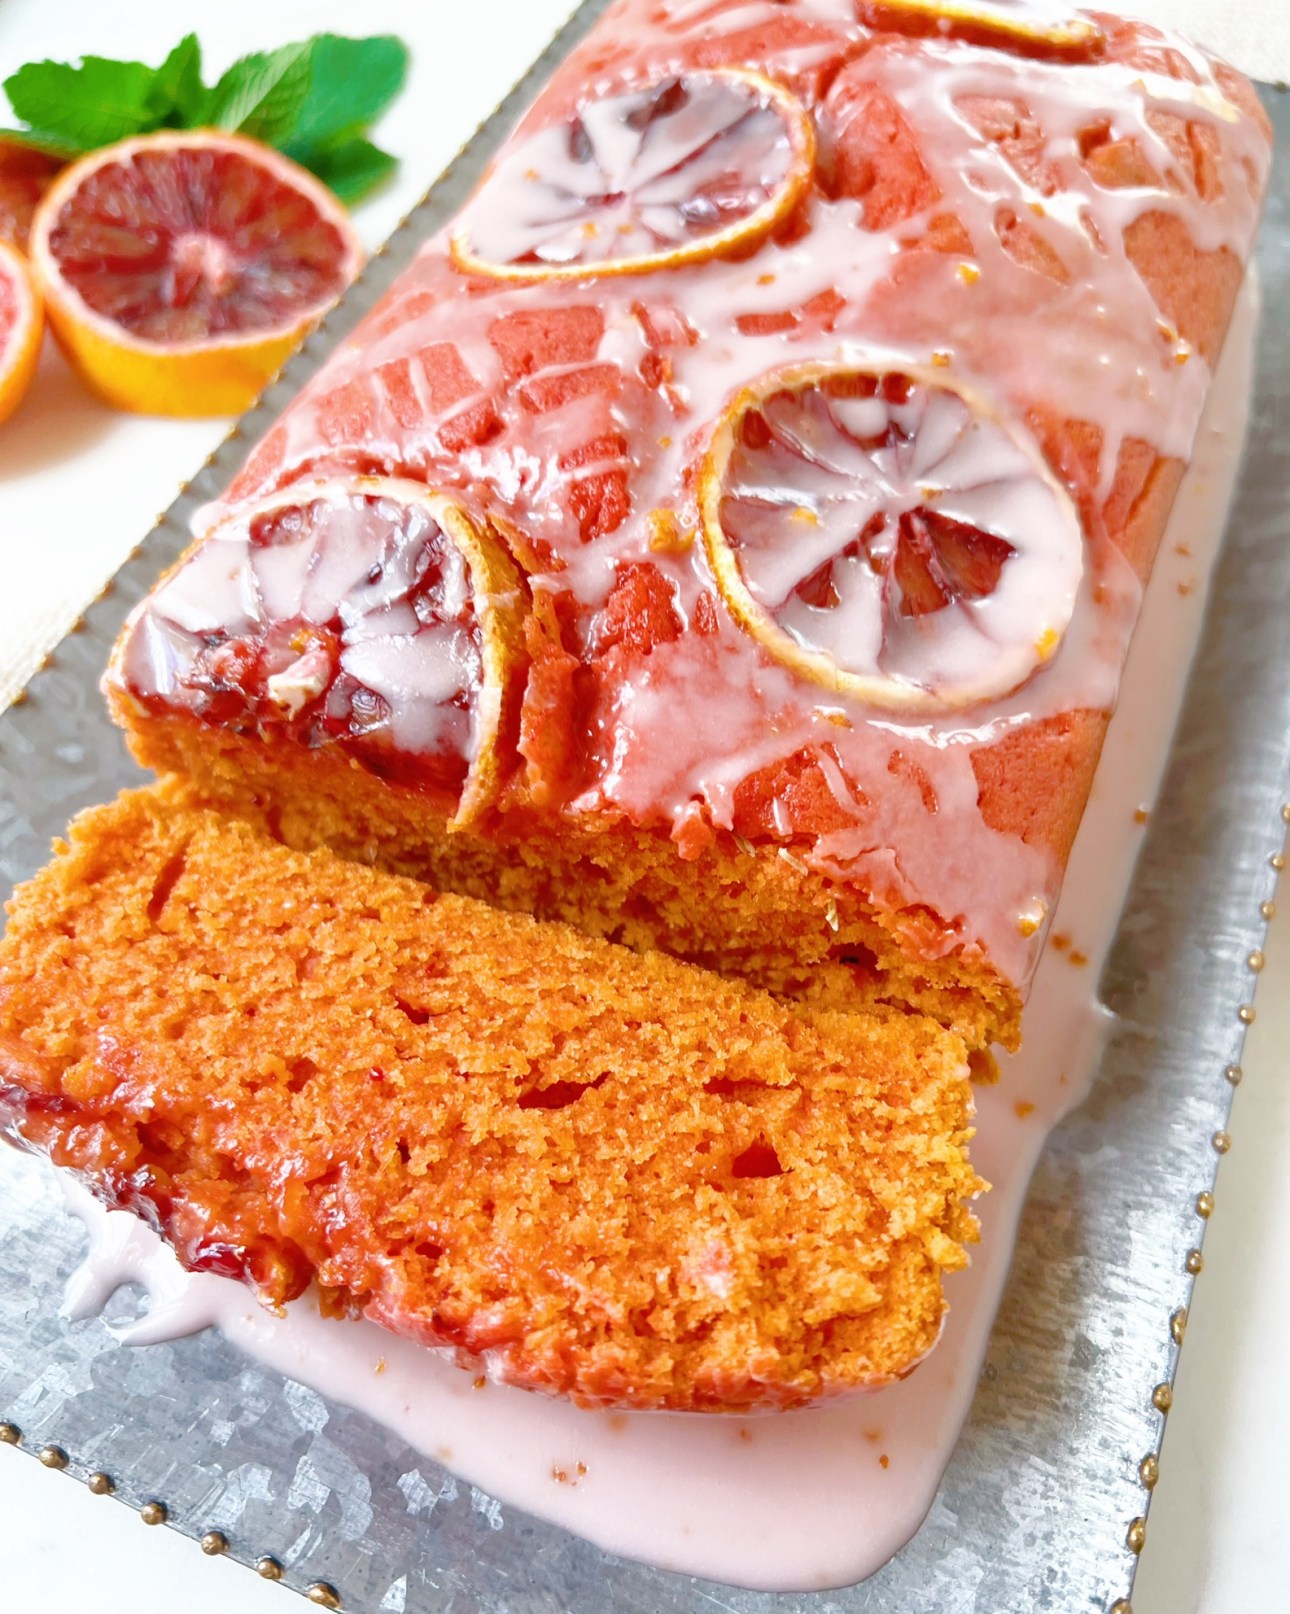 Sliced Glazed Blood Orange Loaf Cake